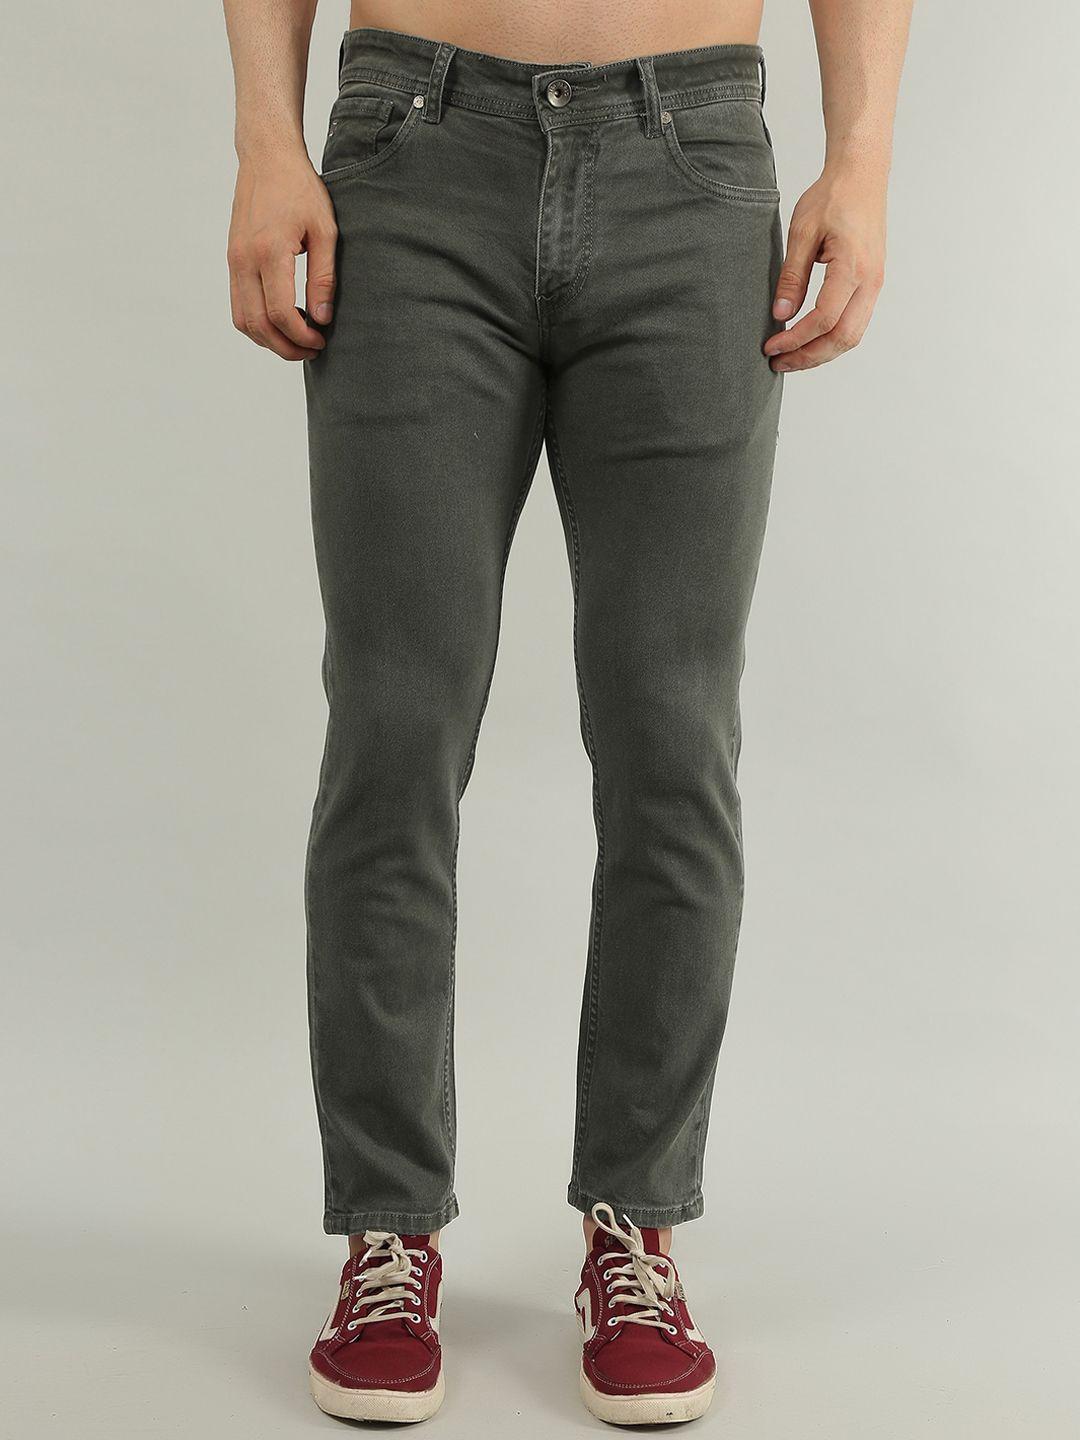 tim-paris-men-comfort-clean-look-stretchable-cotton--jeans